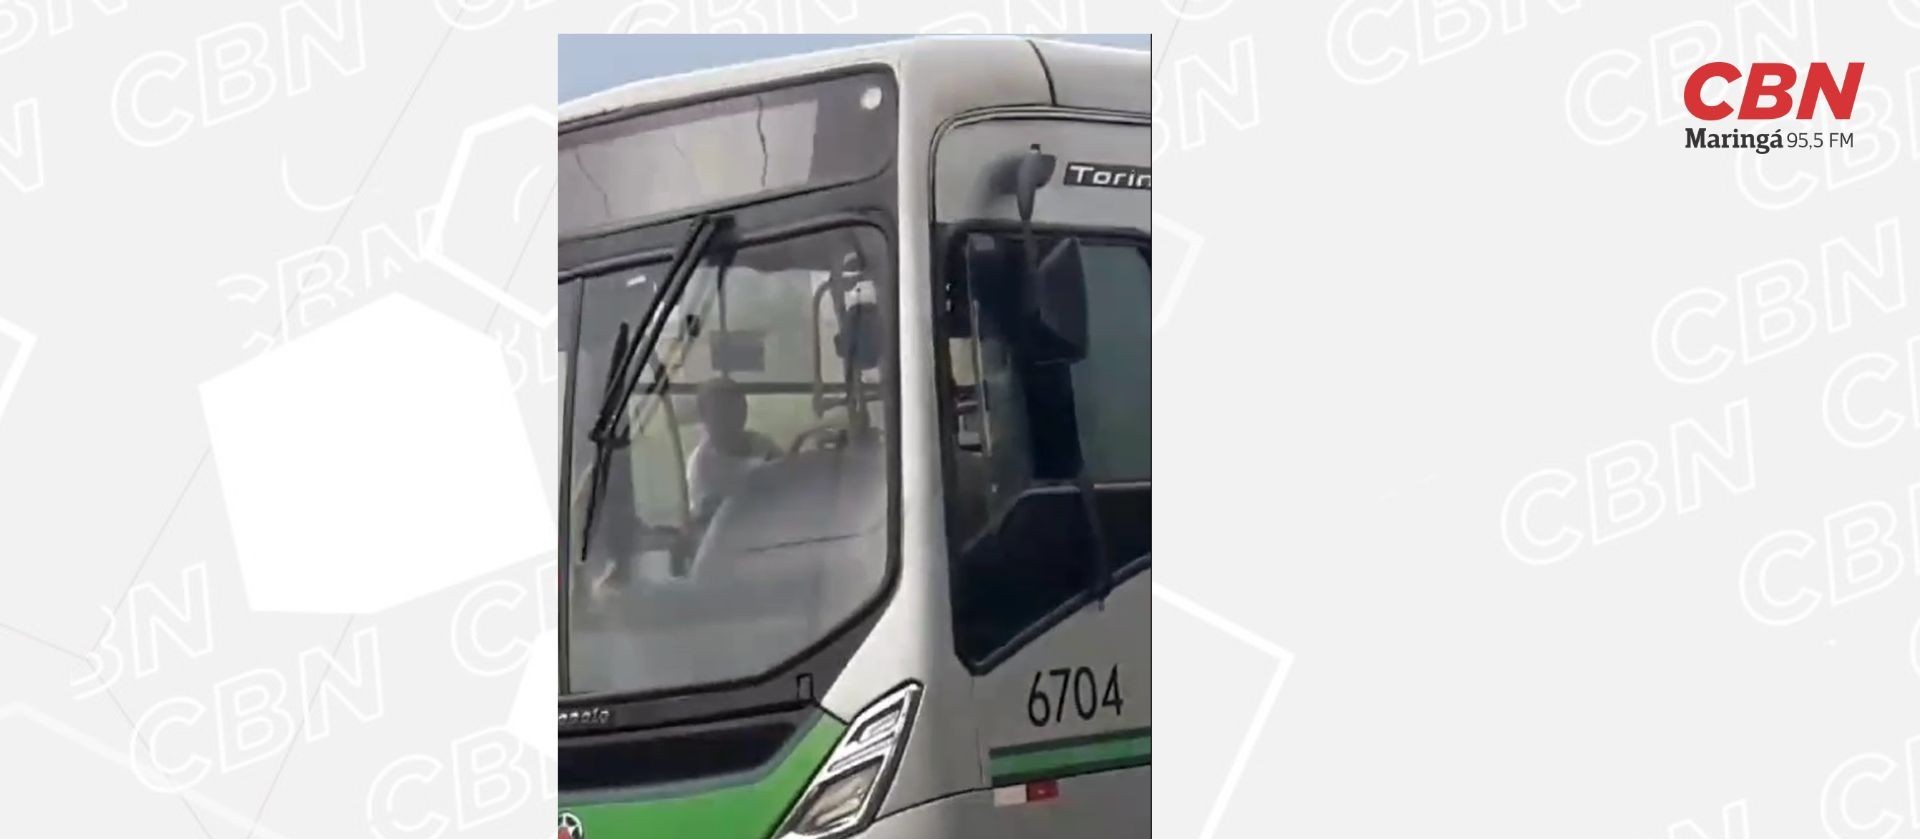 Empresa fala sobre motorista que deixou ônibus após bagunça de alunos